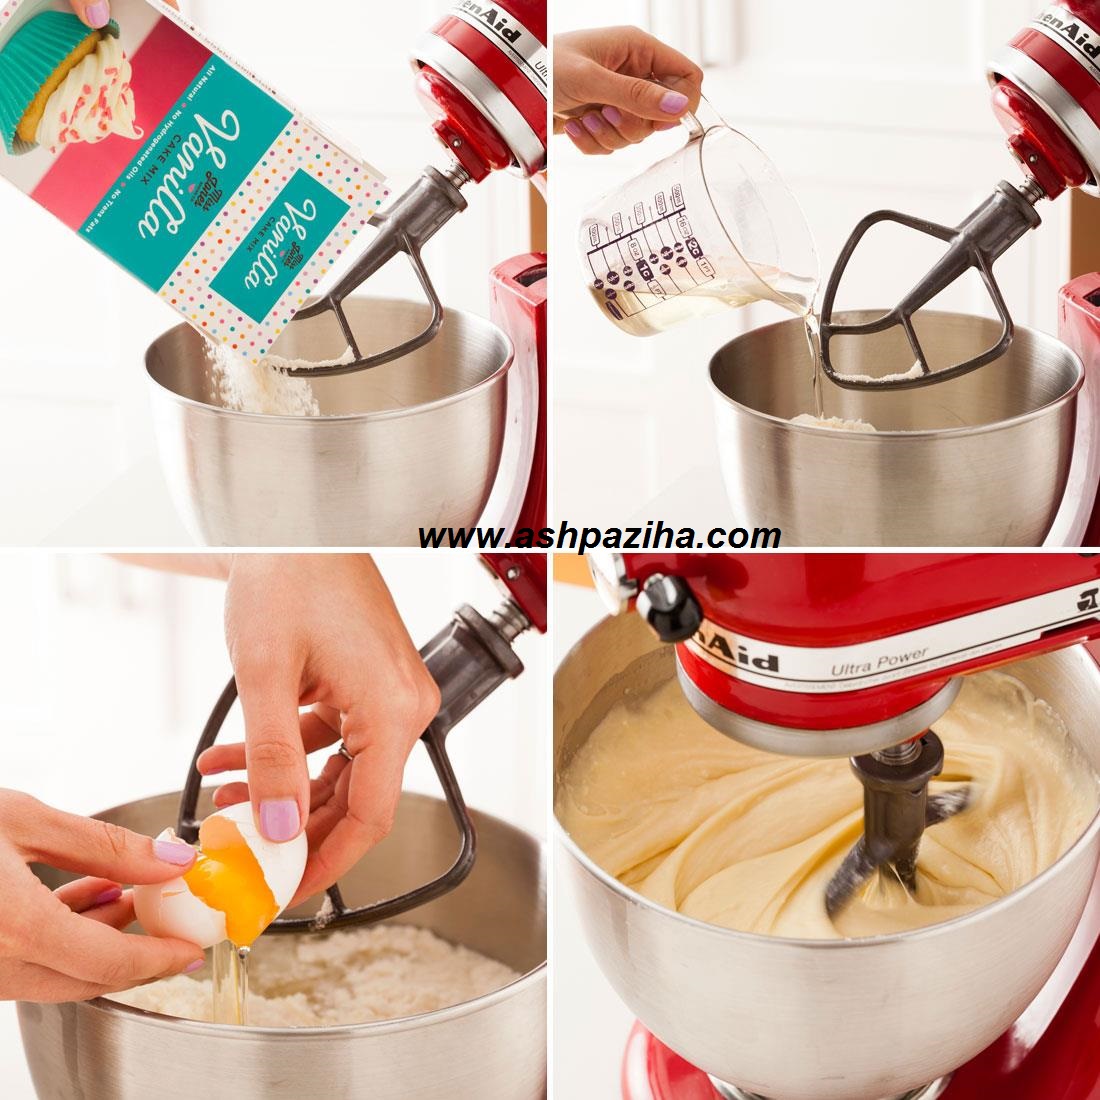 Mode - preparing - cake - ice cream - conical (3)